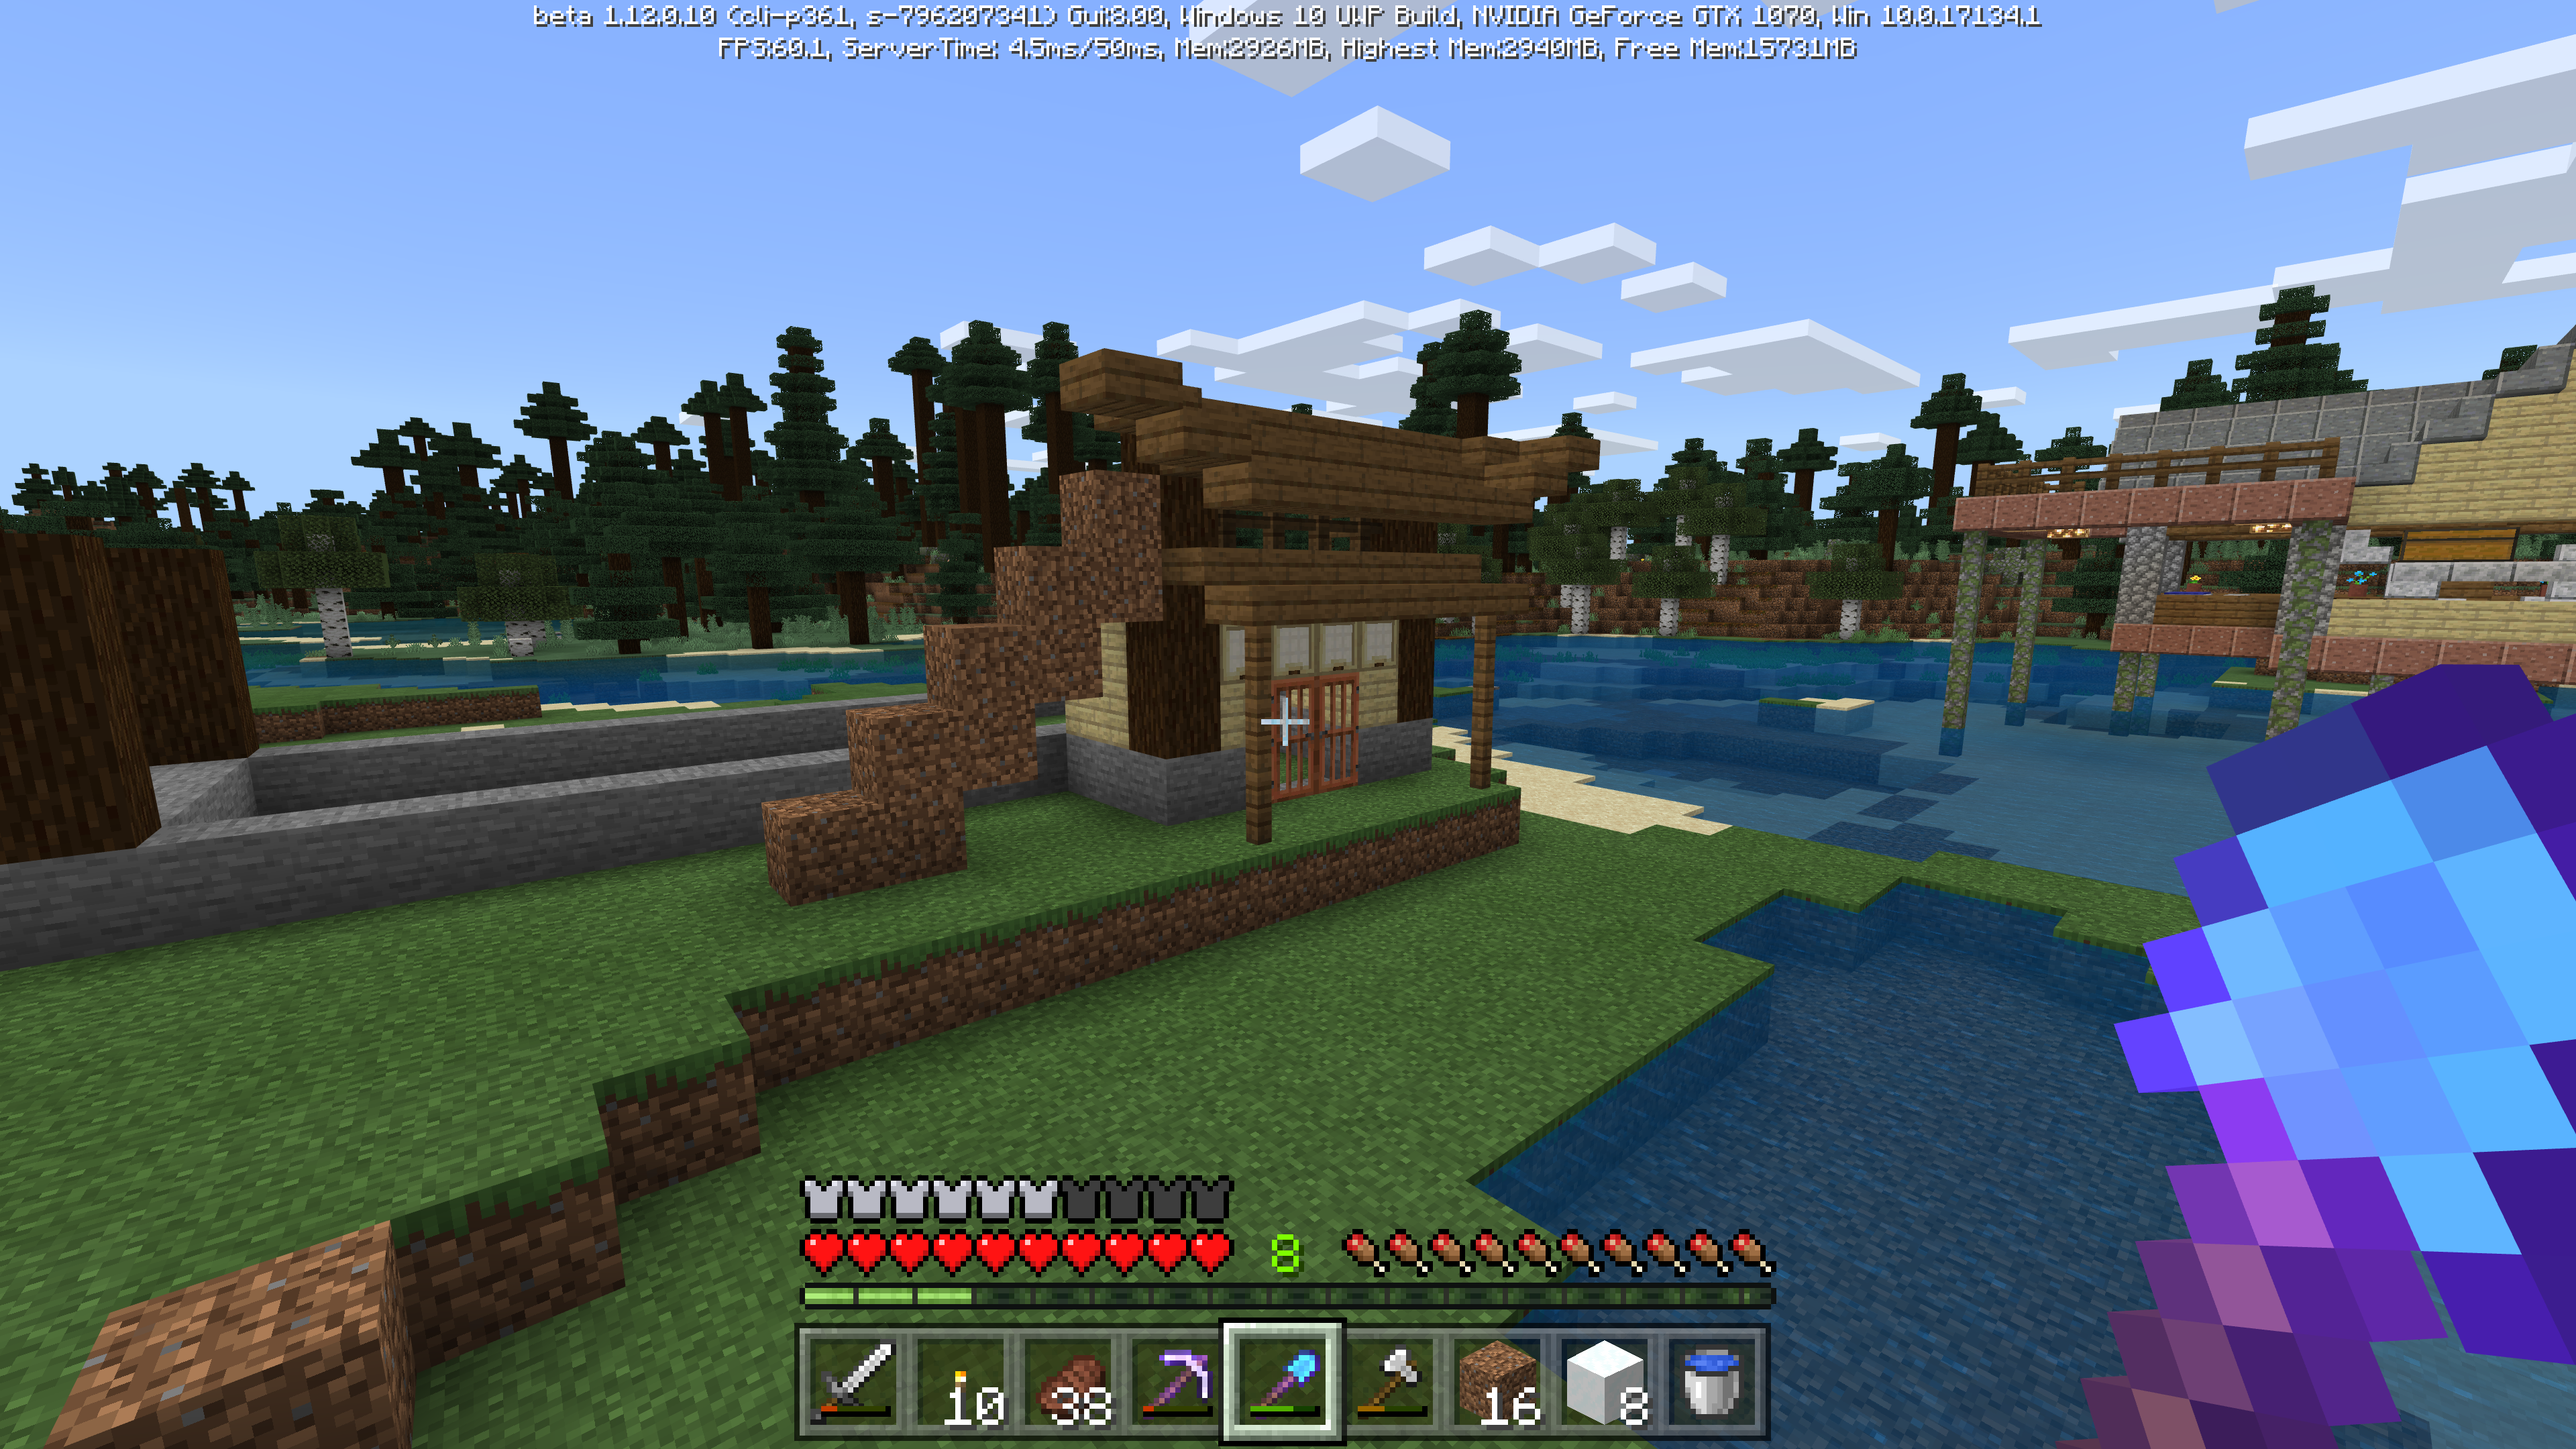 Minecraft 縁側の似合うお家が作りたい 初めての和風建築に四苦八苦 前編 Hiro流ゲームライフ